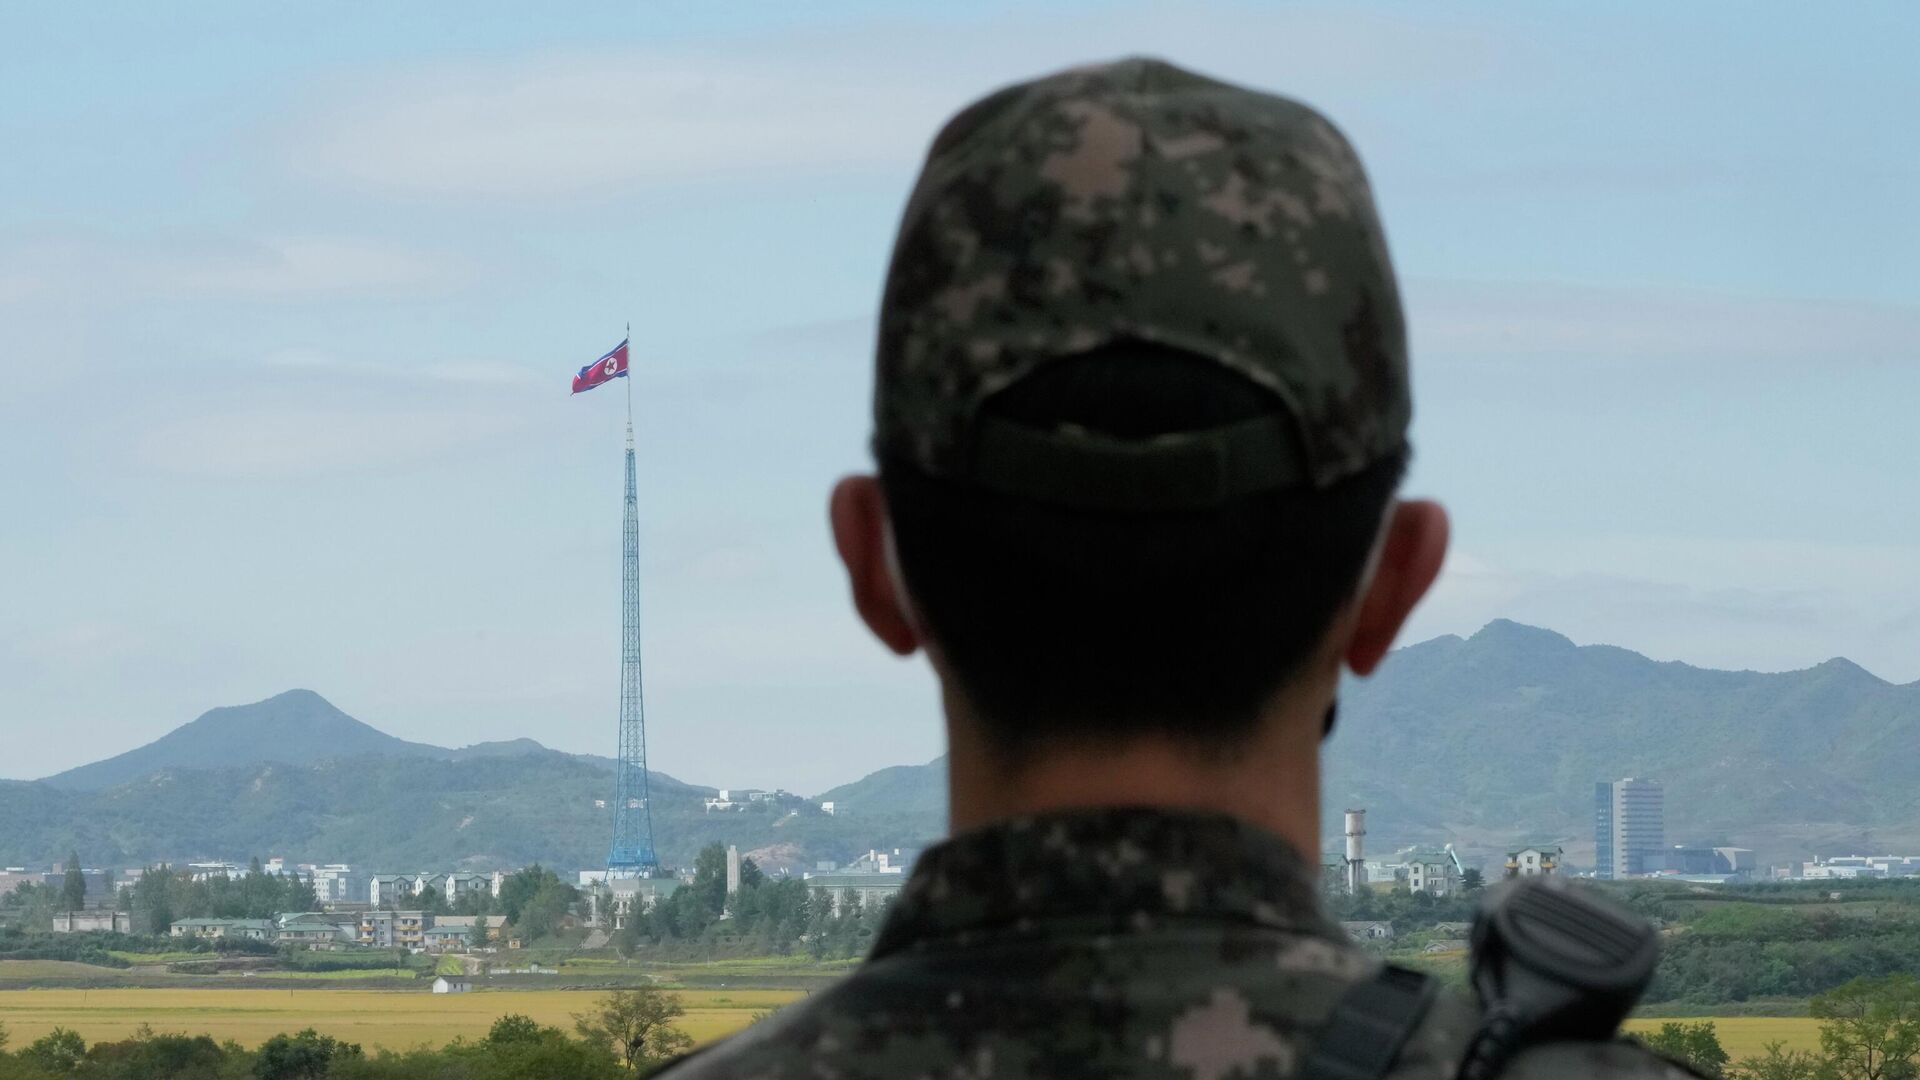 Tập trận Hàn Quốc và Mỹ đáp trả tên lửa Triều Tiên: Những hình ảnh về tập trận Hàn Quốc và Mỹ để đáp trả tên lửa của Triều Tiên sẽ khiến bạn đầy kích thích. Qua đó, bạn sẽ được cập nhật về các hoạt động quân sự của Hàn Quốc và Mỹ, cũng như tình hình an ninh khu vực.